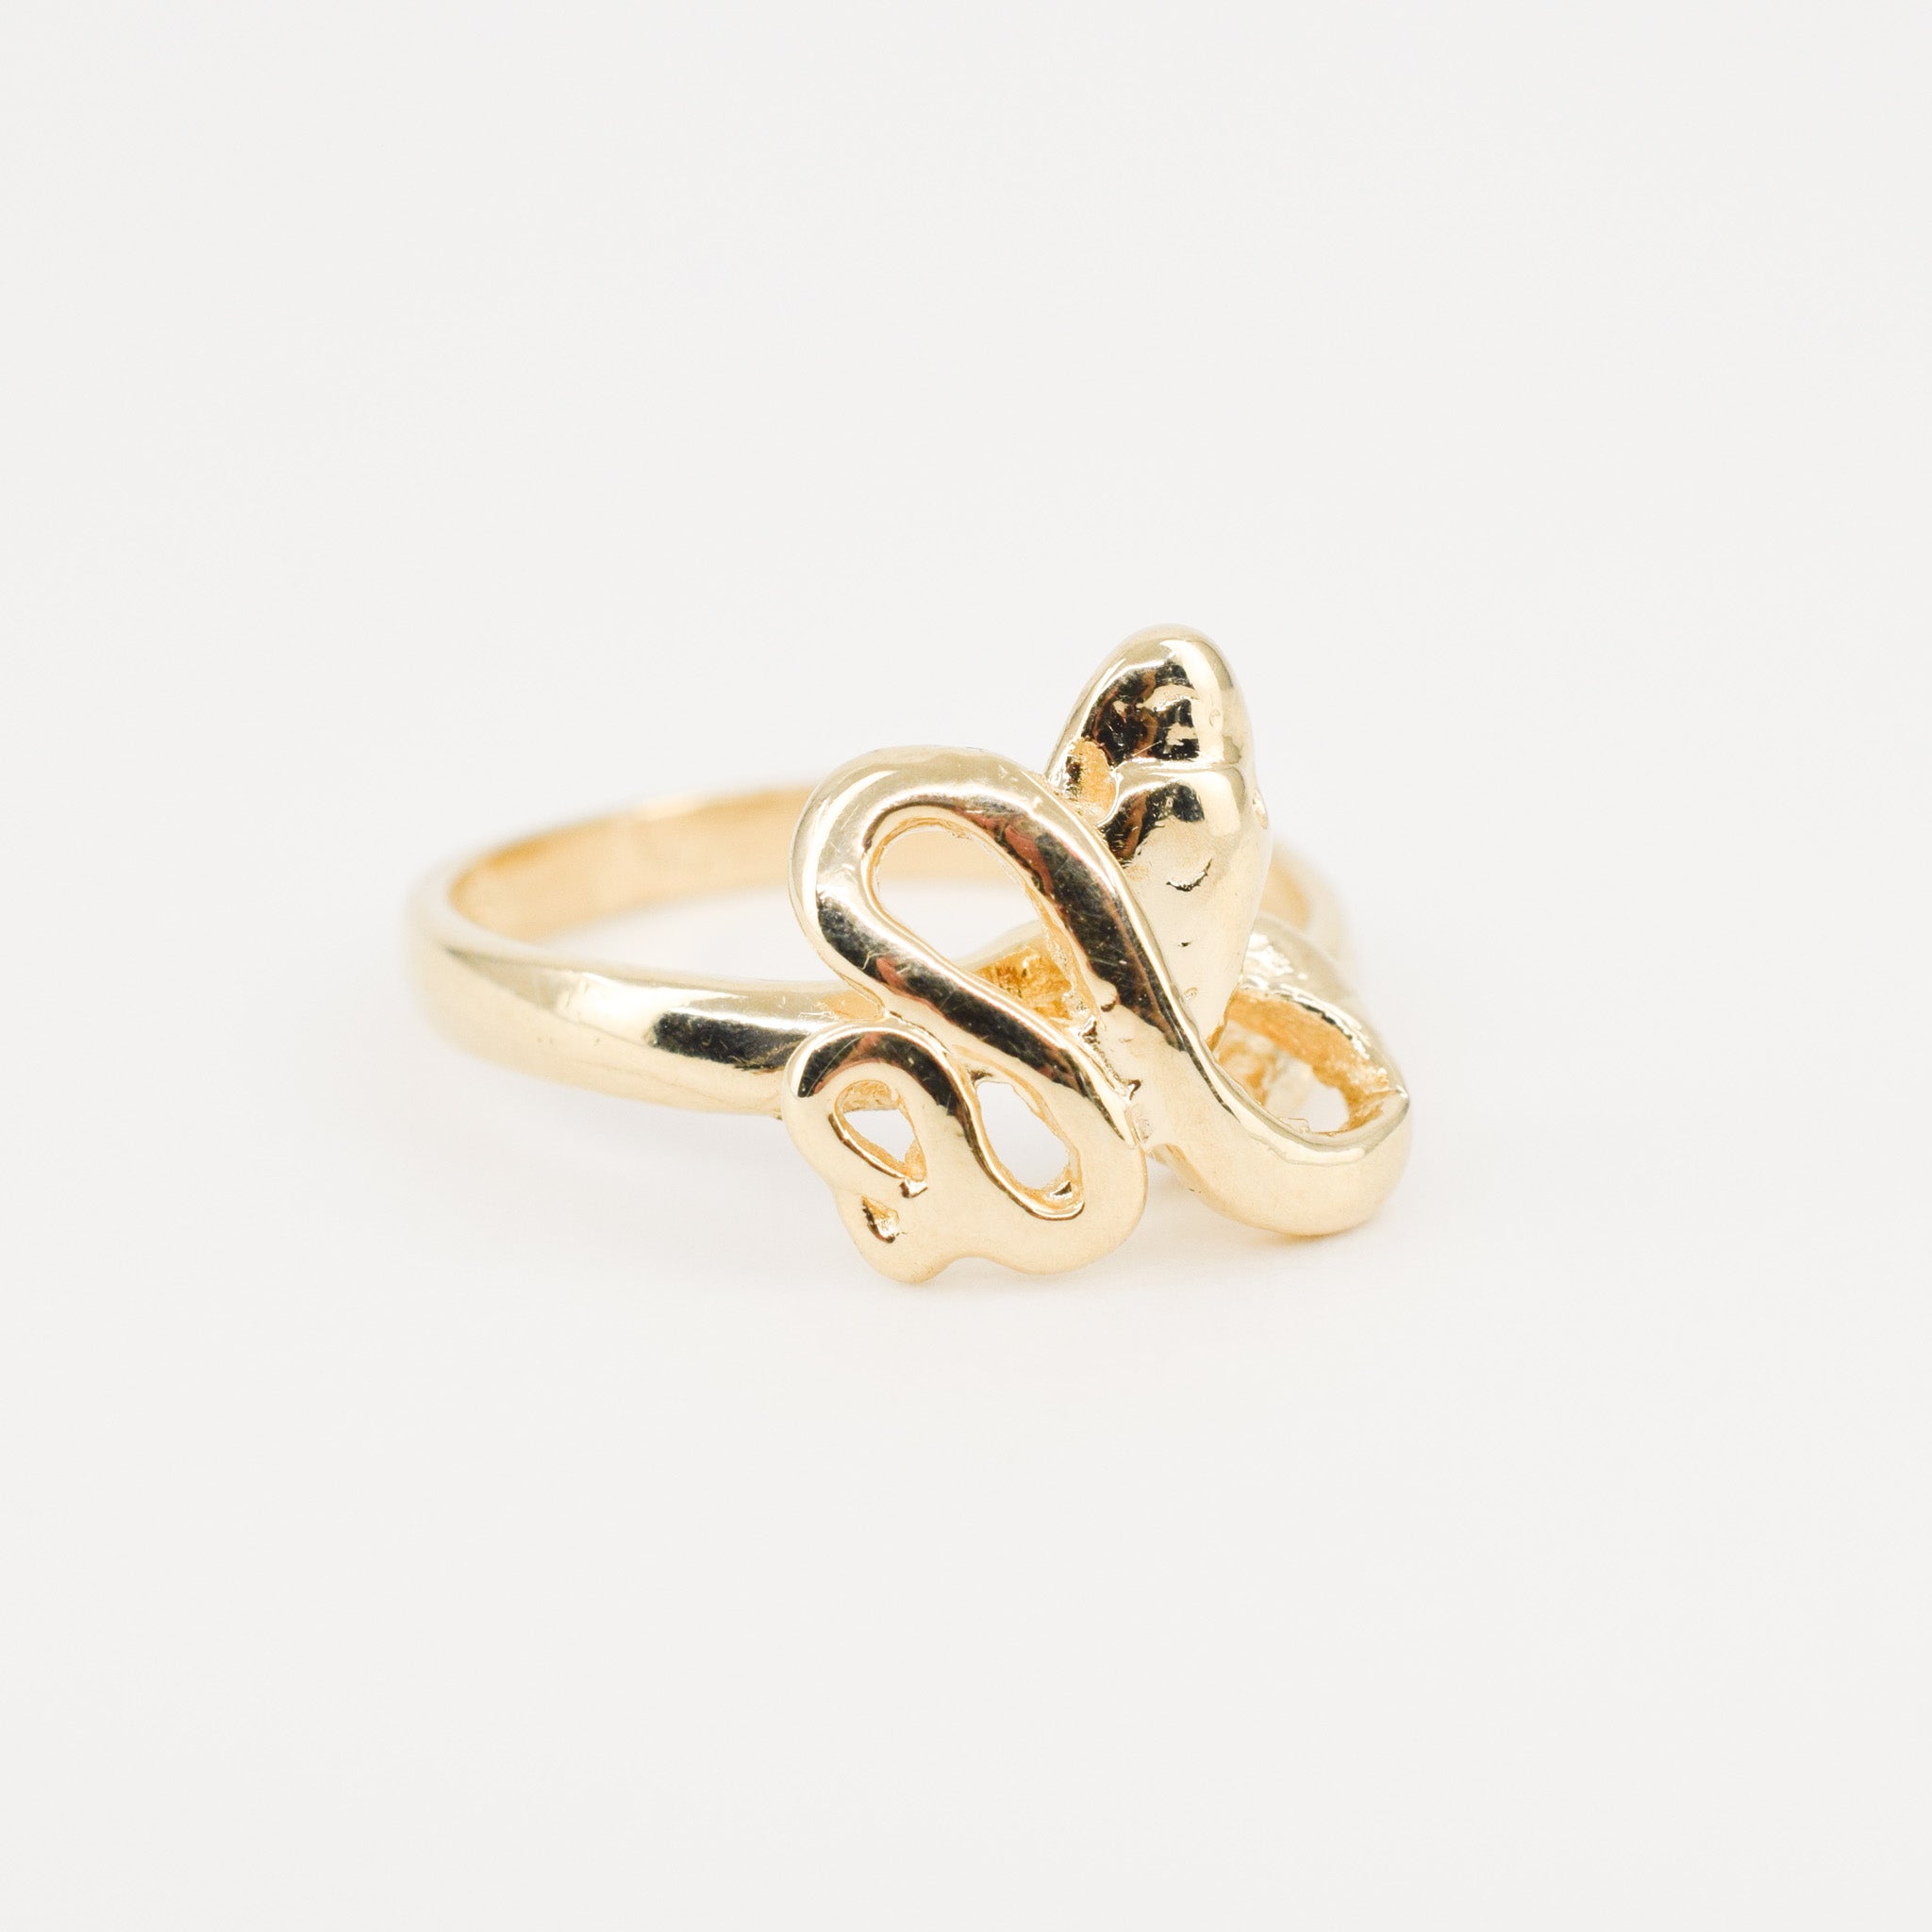 vintage gold snake ring, folklor vintage jewelry canada